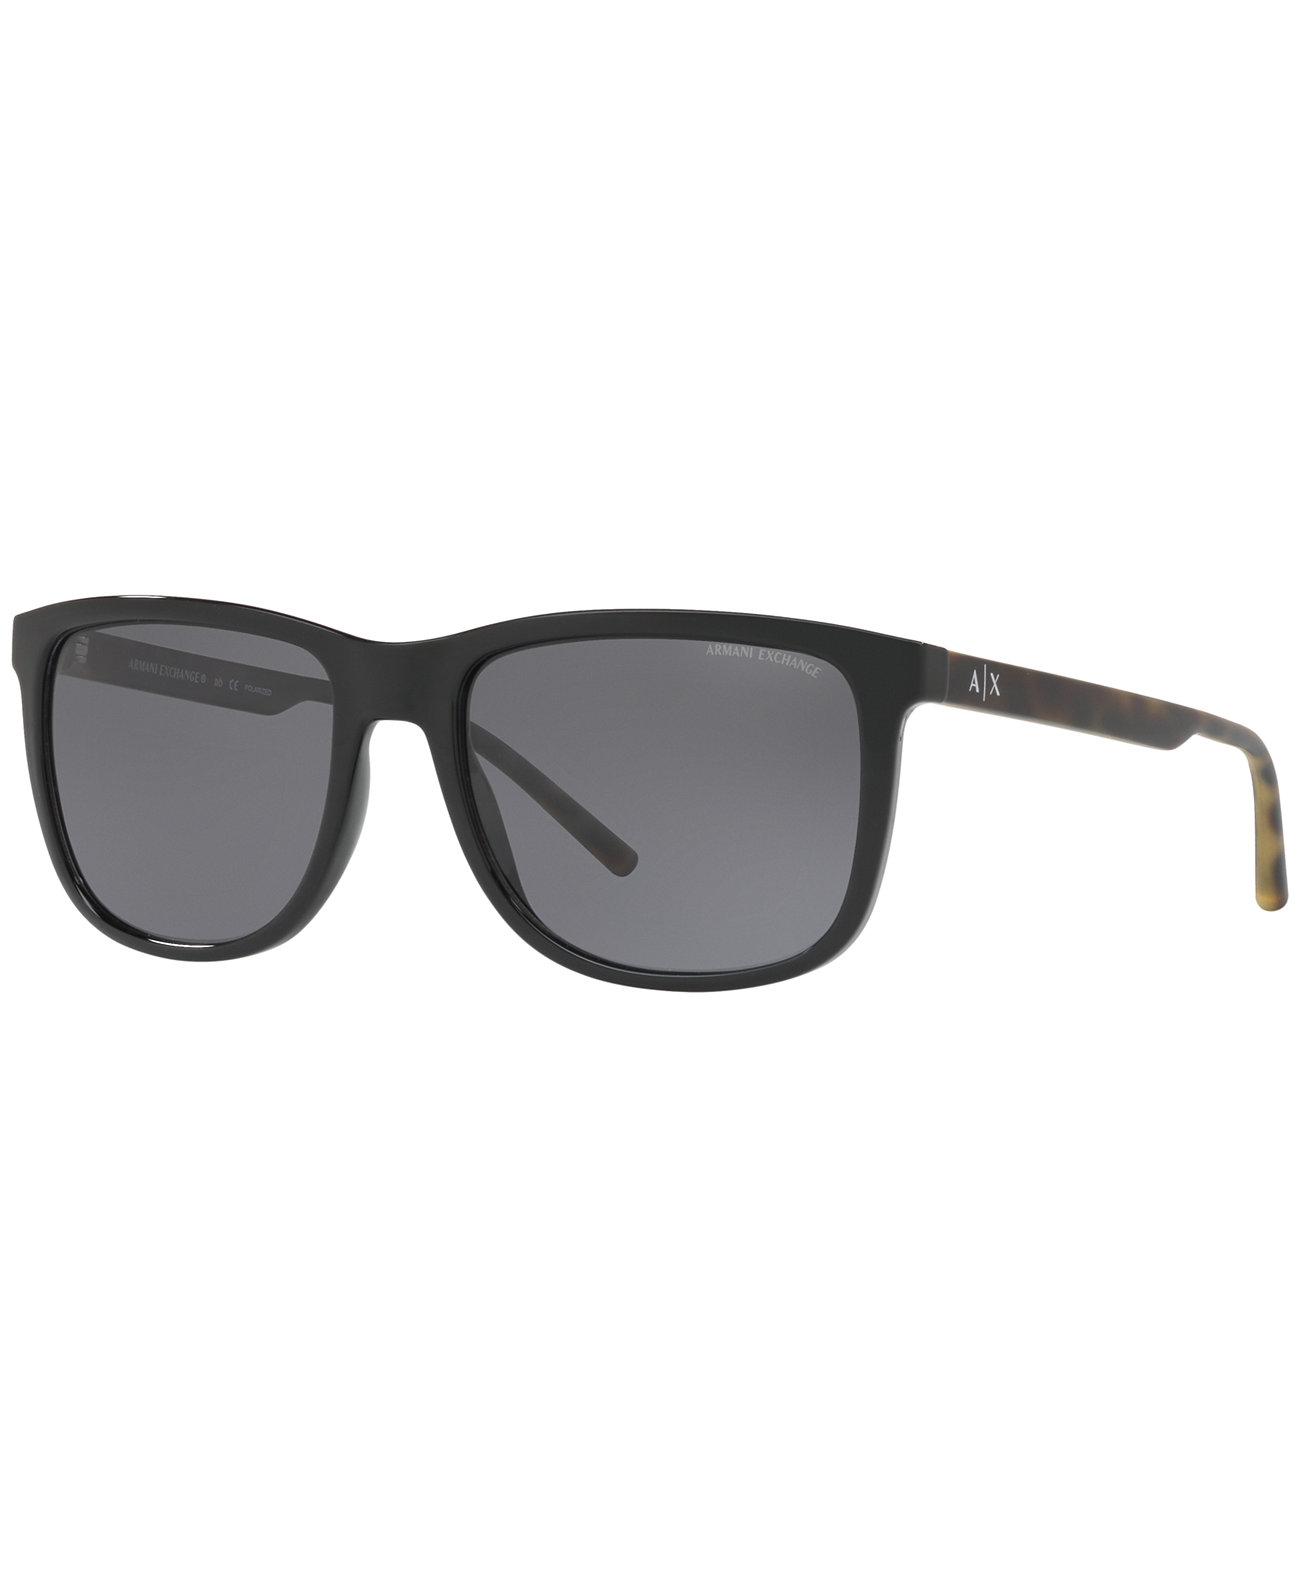 Поляризованные солнцезащитные очки A | X, AX4070S Armani